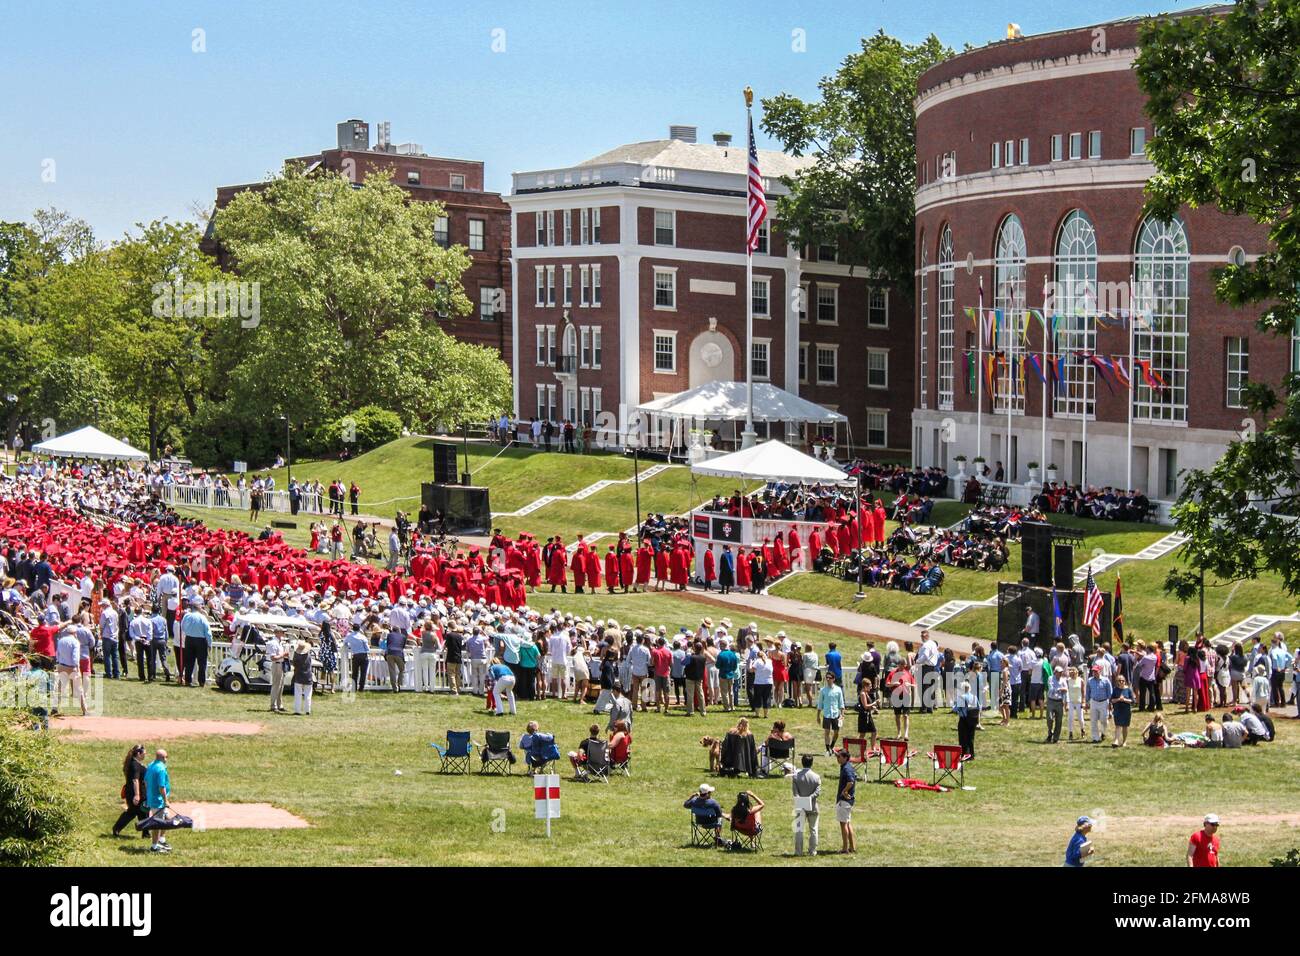 Aprile 24 2015 Middletown CT USA Graduation alla Wesleyan University All'aperto, con la bandiera americana, si rivisita la folla e la cerimonia dall'alto e la costruzione del campus Foto Stock